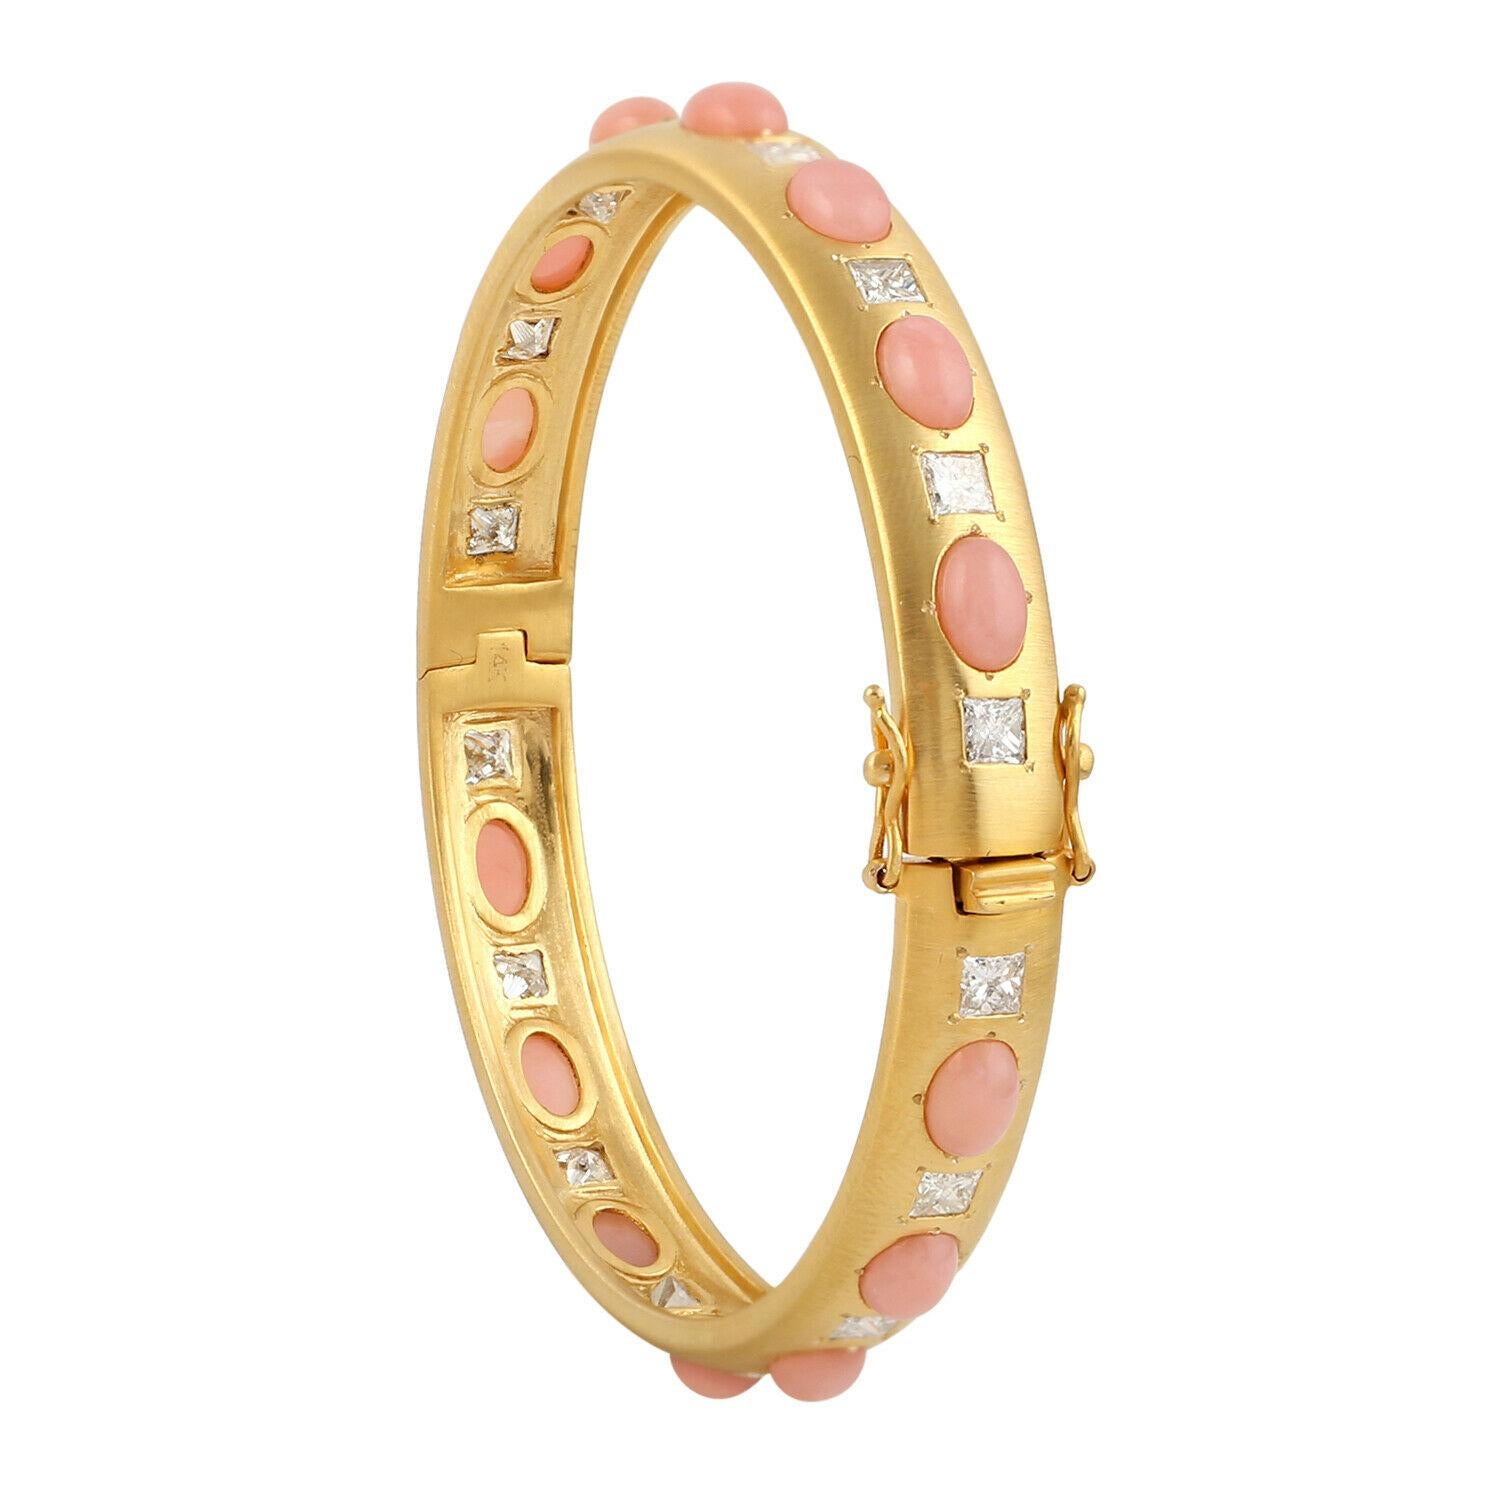 Un superbe bracelet fabriqué à la main en or jaune 14K. Elle est sertie à la main d'une opale de 5,88 carats et de 2,75 carats de diamants étincelants. Portez-la seule ou superposez-la avec vos pièces préférées.

SUIVEZ la vitrine de MEGHNA JEWELS